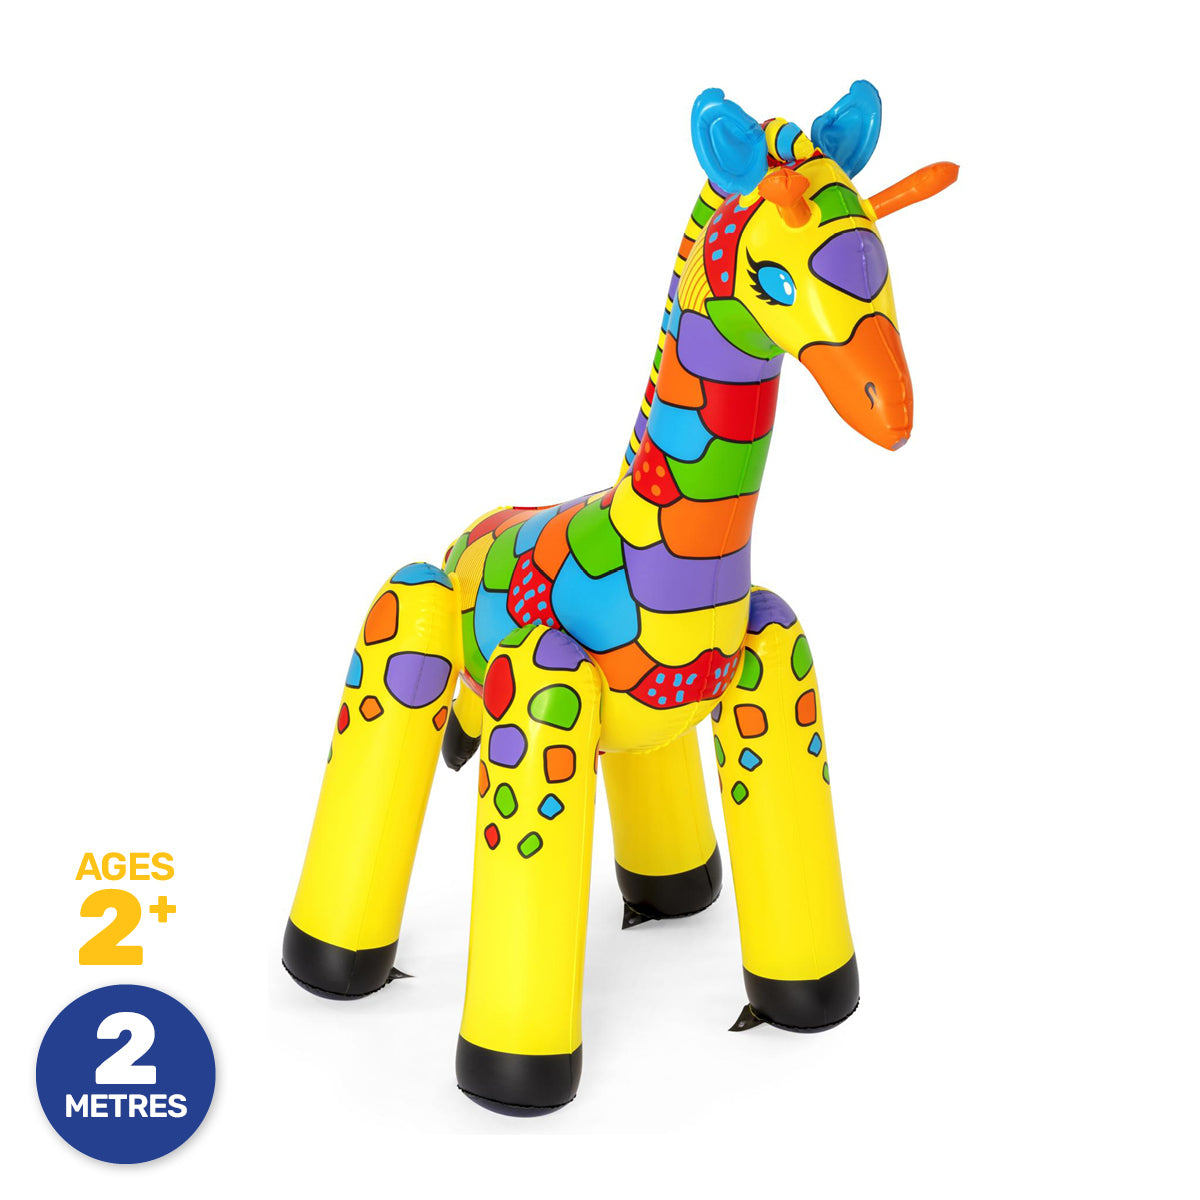 Inflatable Giraffe Sprinkler Jumbo Sized Brightly Coloured 2m